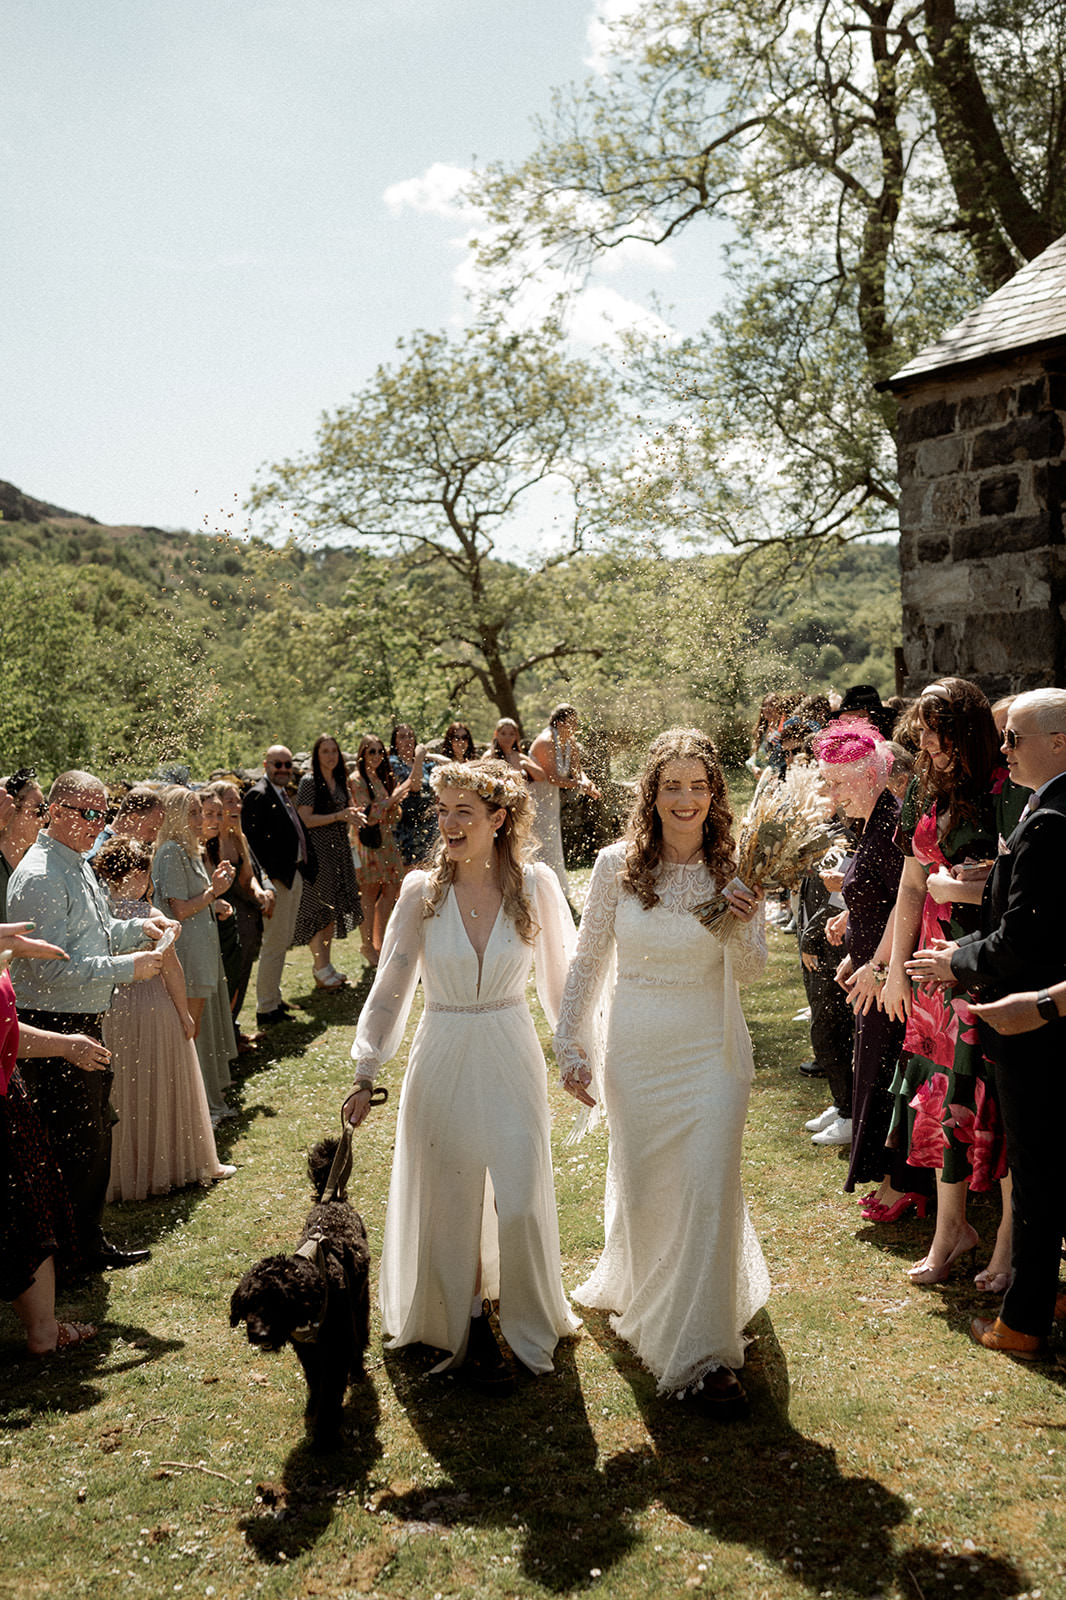 North Wales Wedding Photographer | 2 brides getting married at Llyn Gwynant Barns with confetti